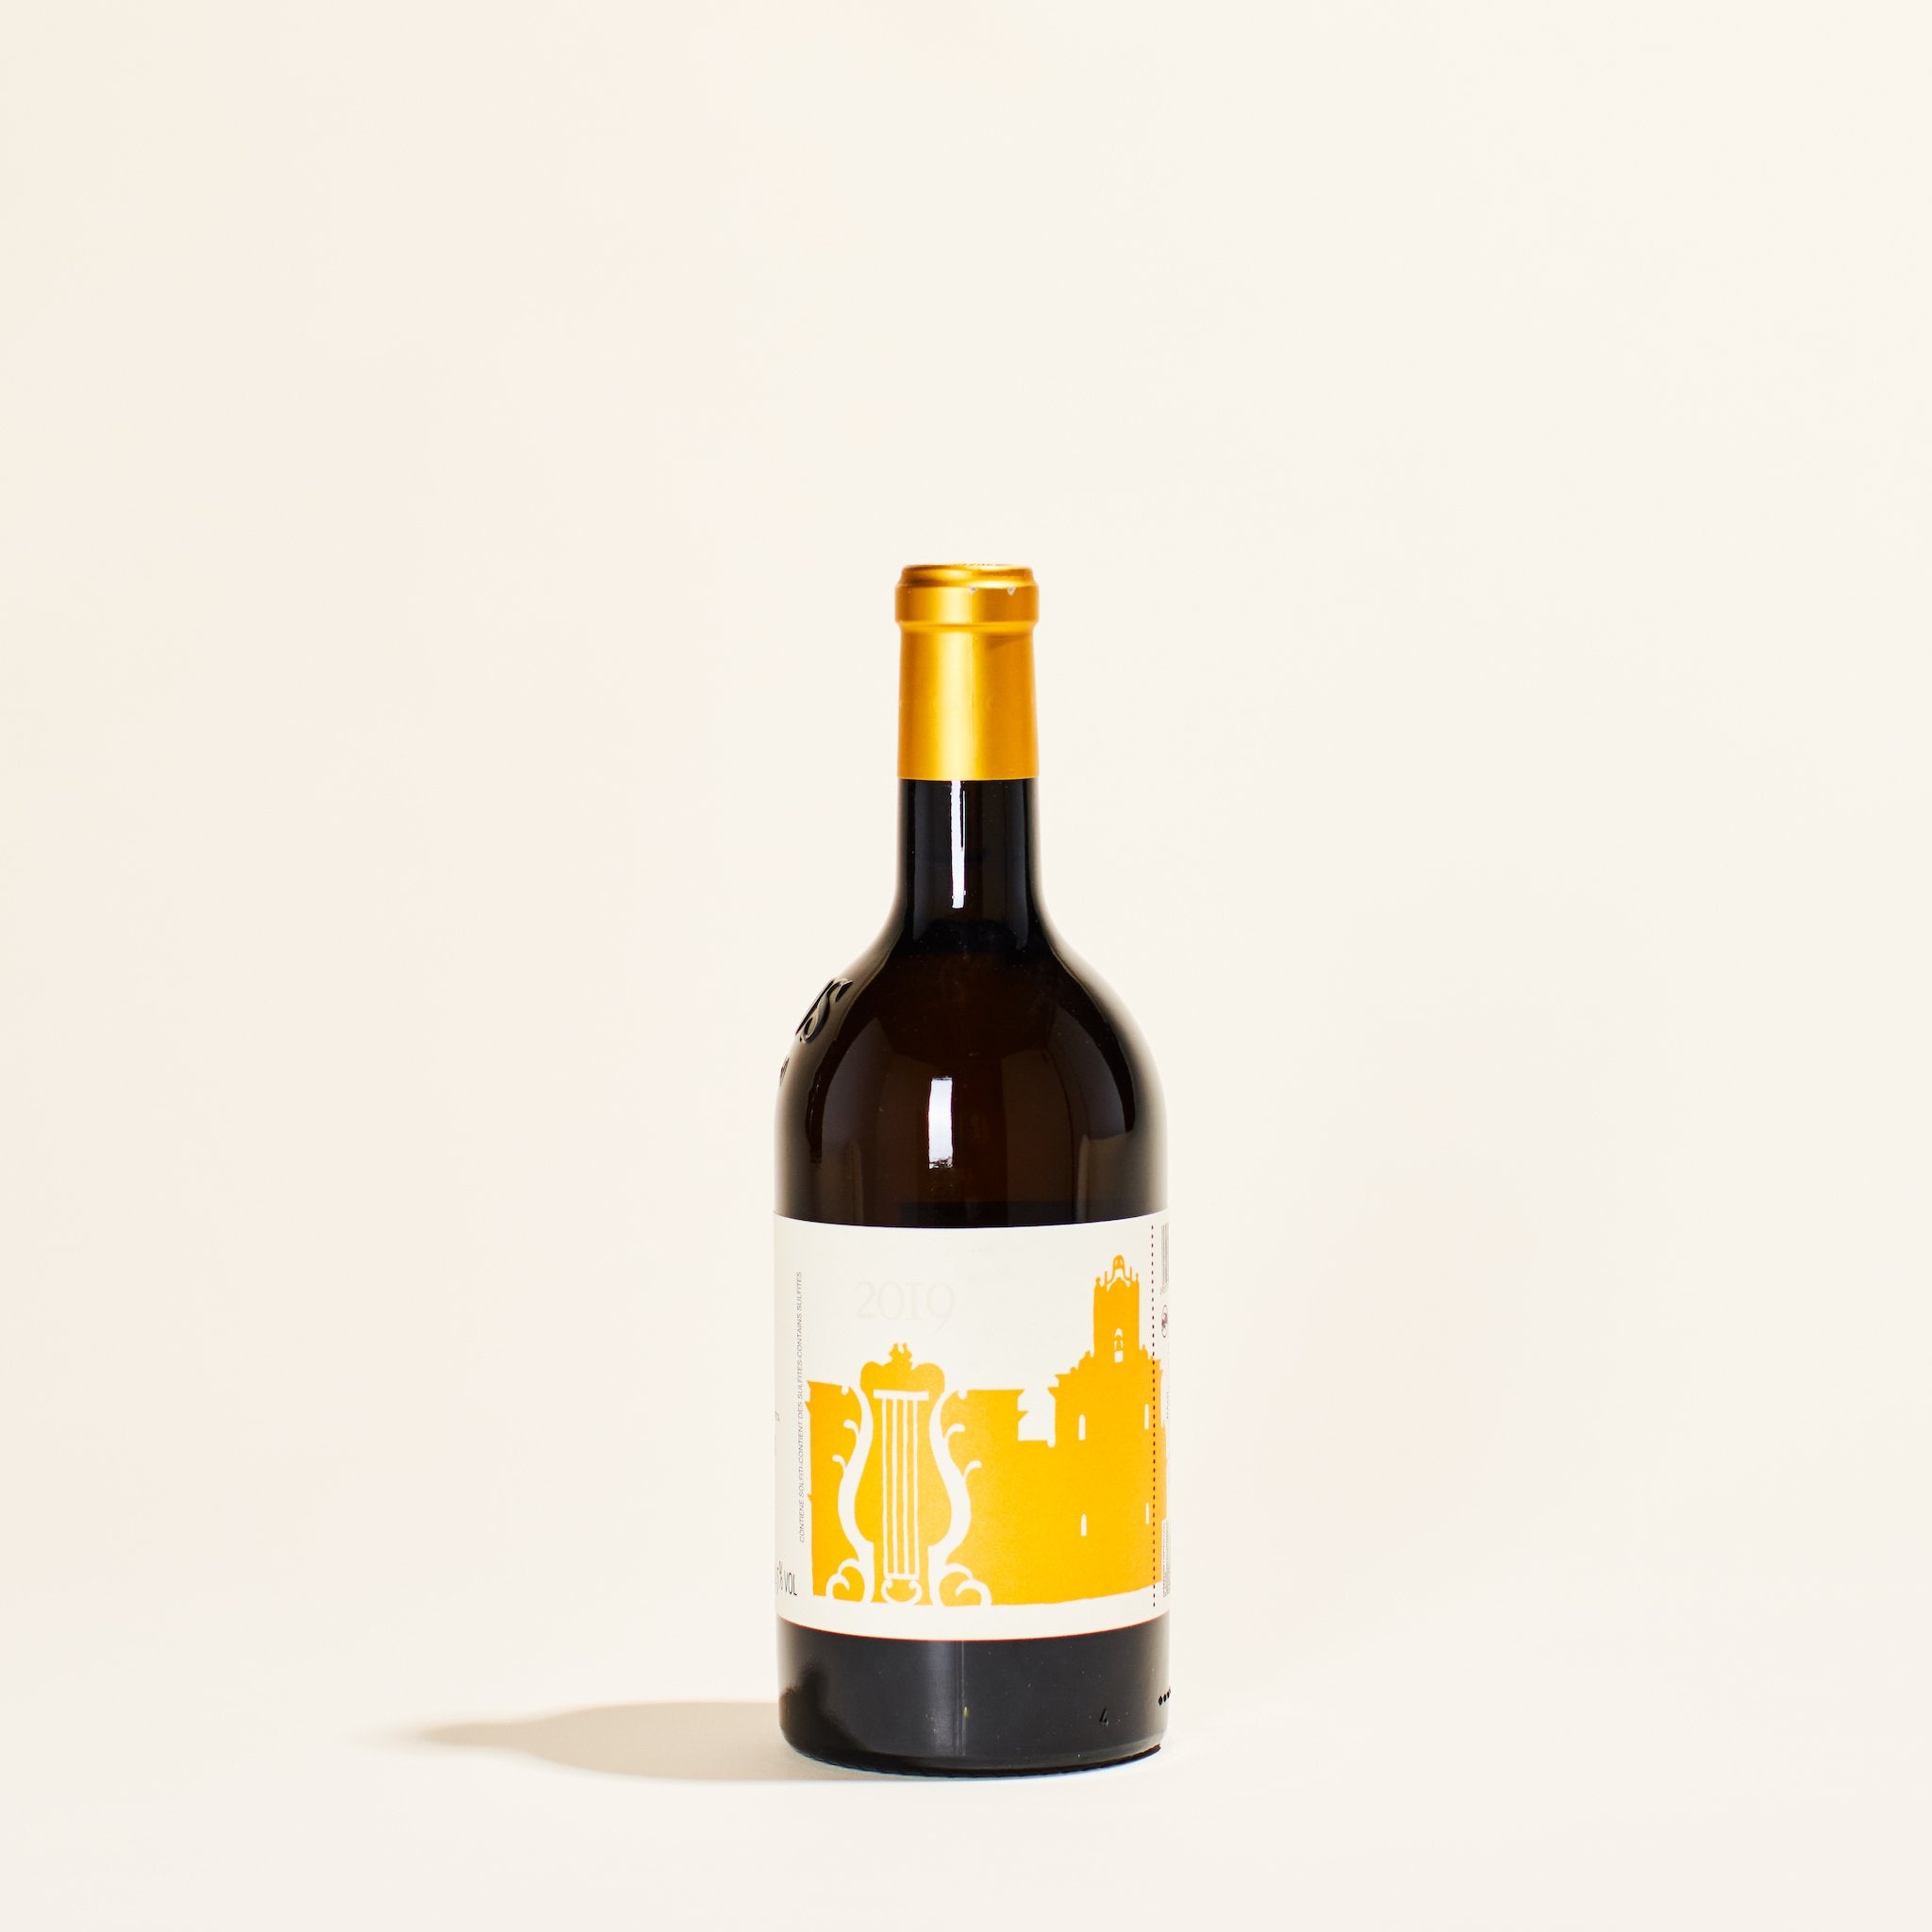 rami cos azienda agricola white orange natural wine sicily italy